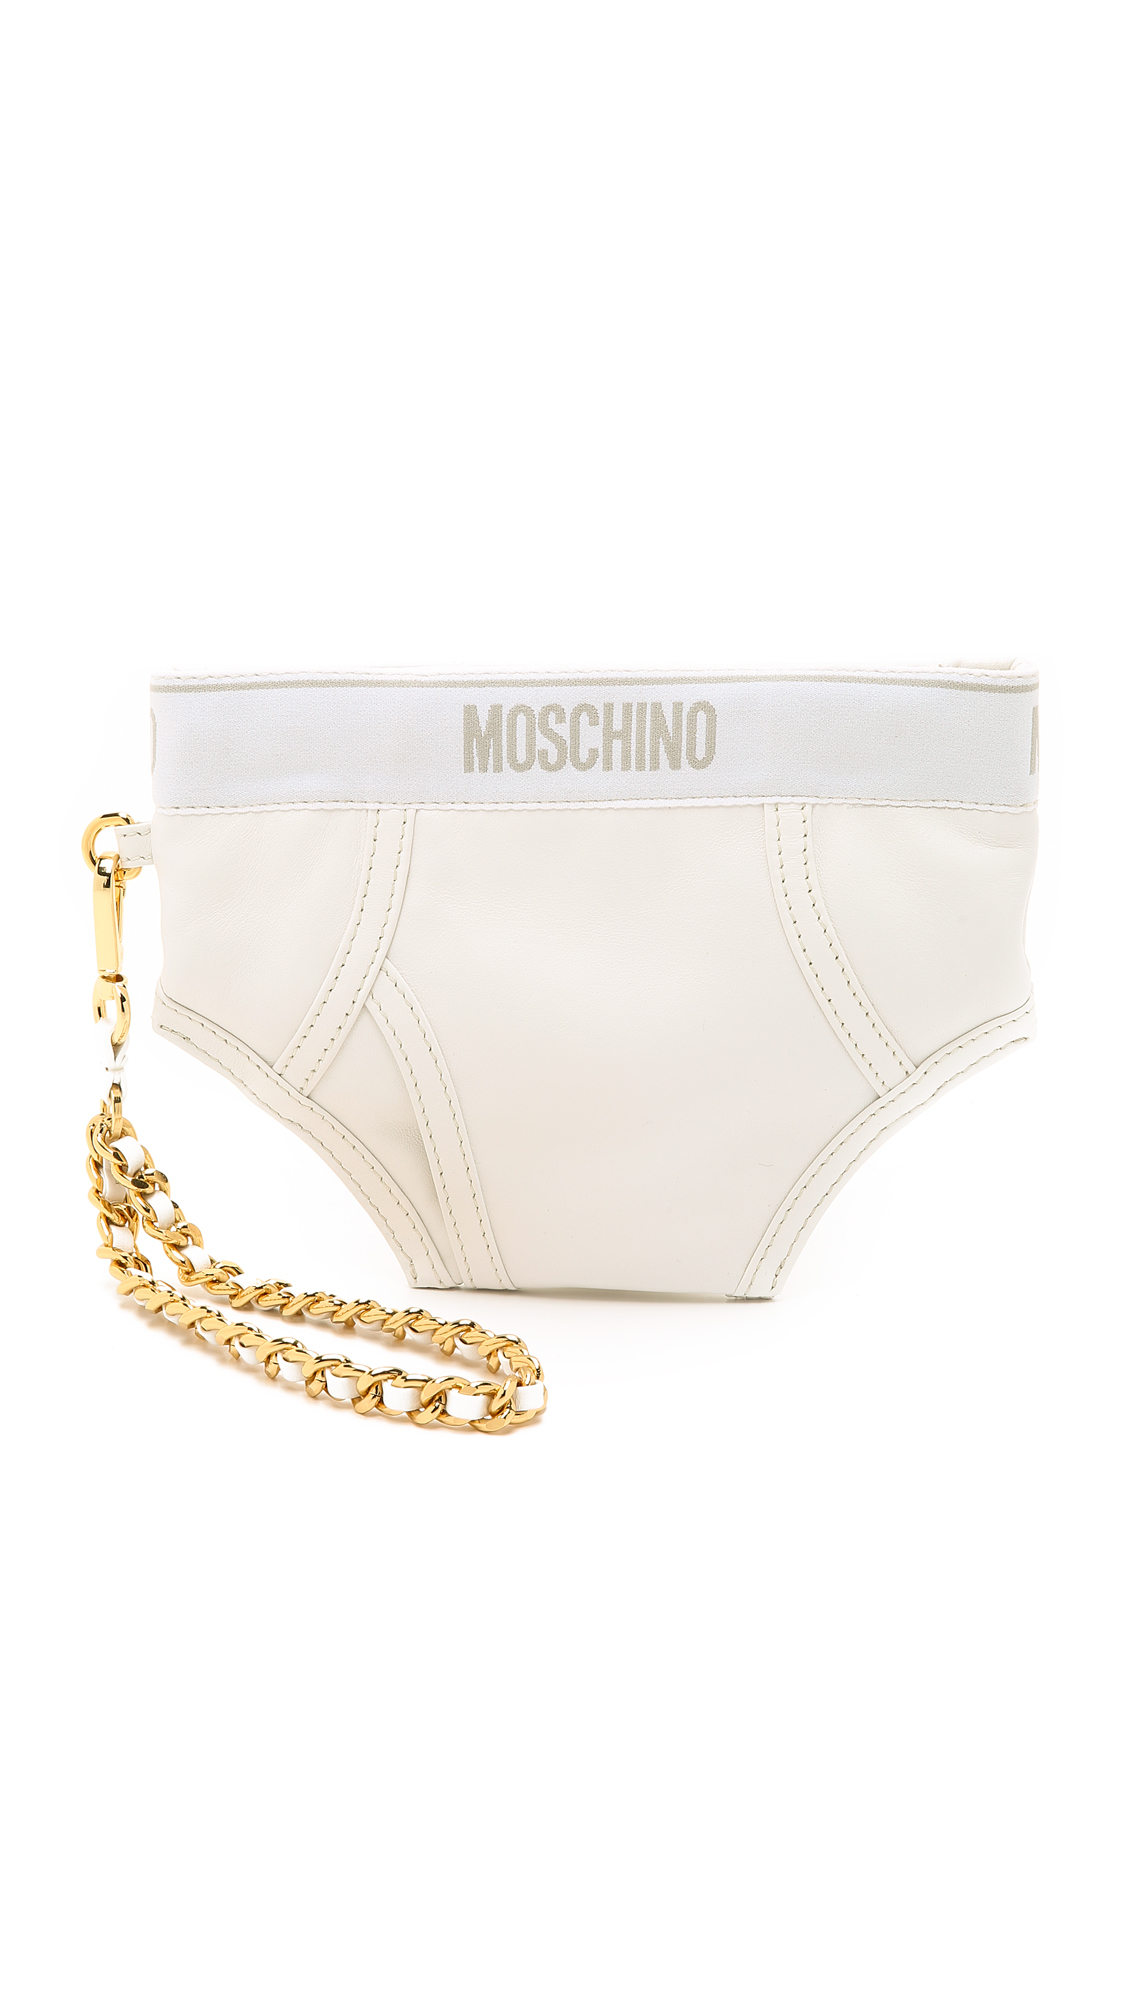 Moschino Underwear Bag - White